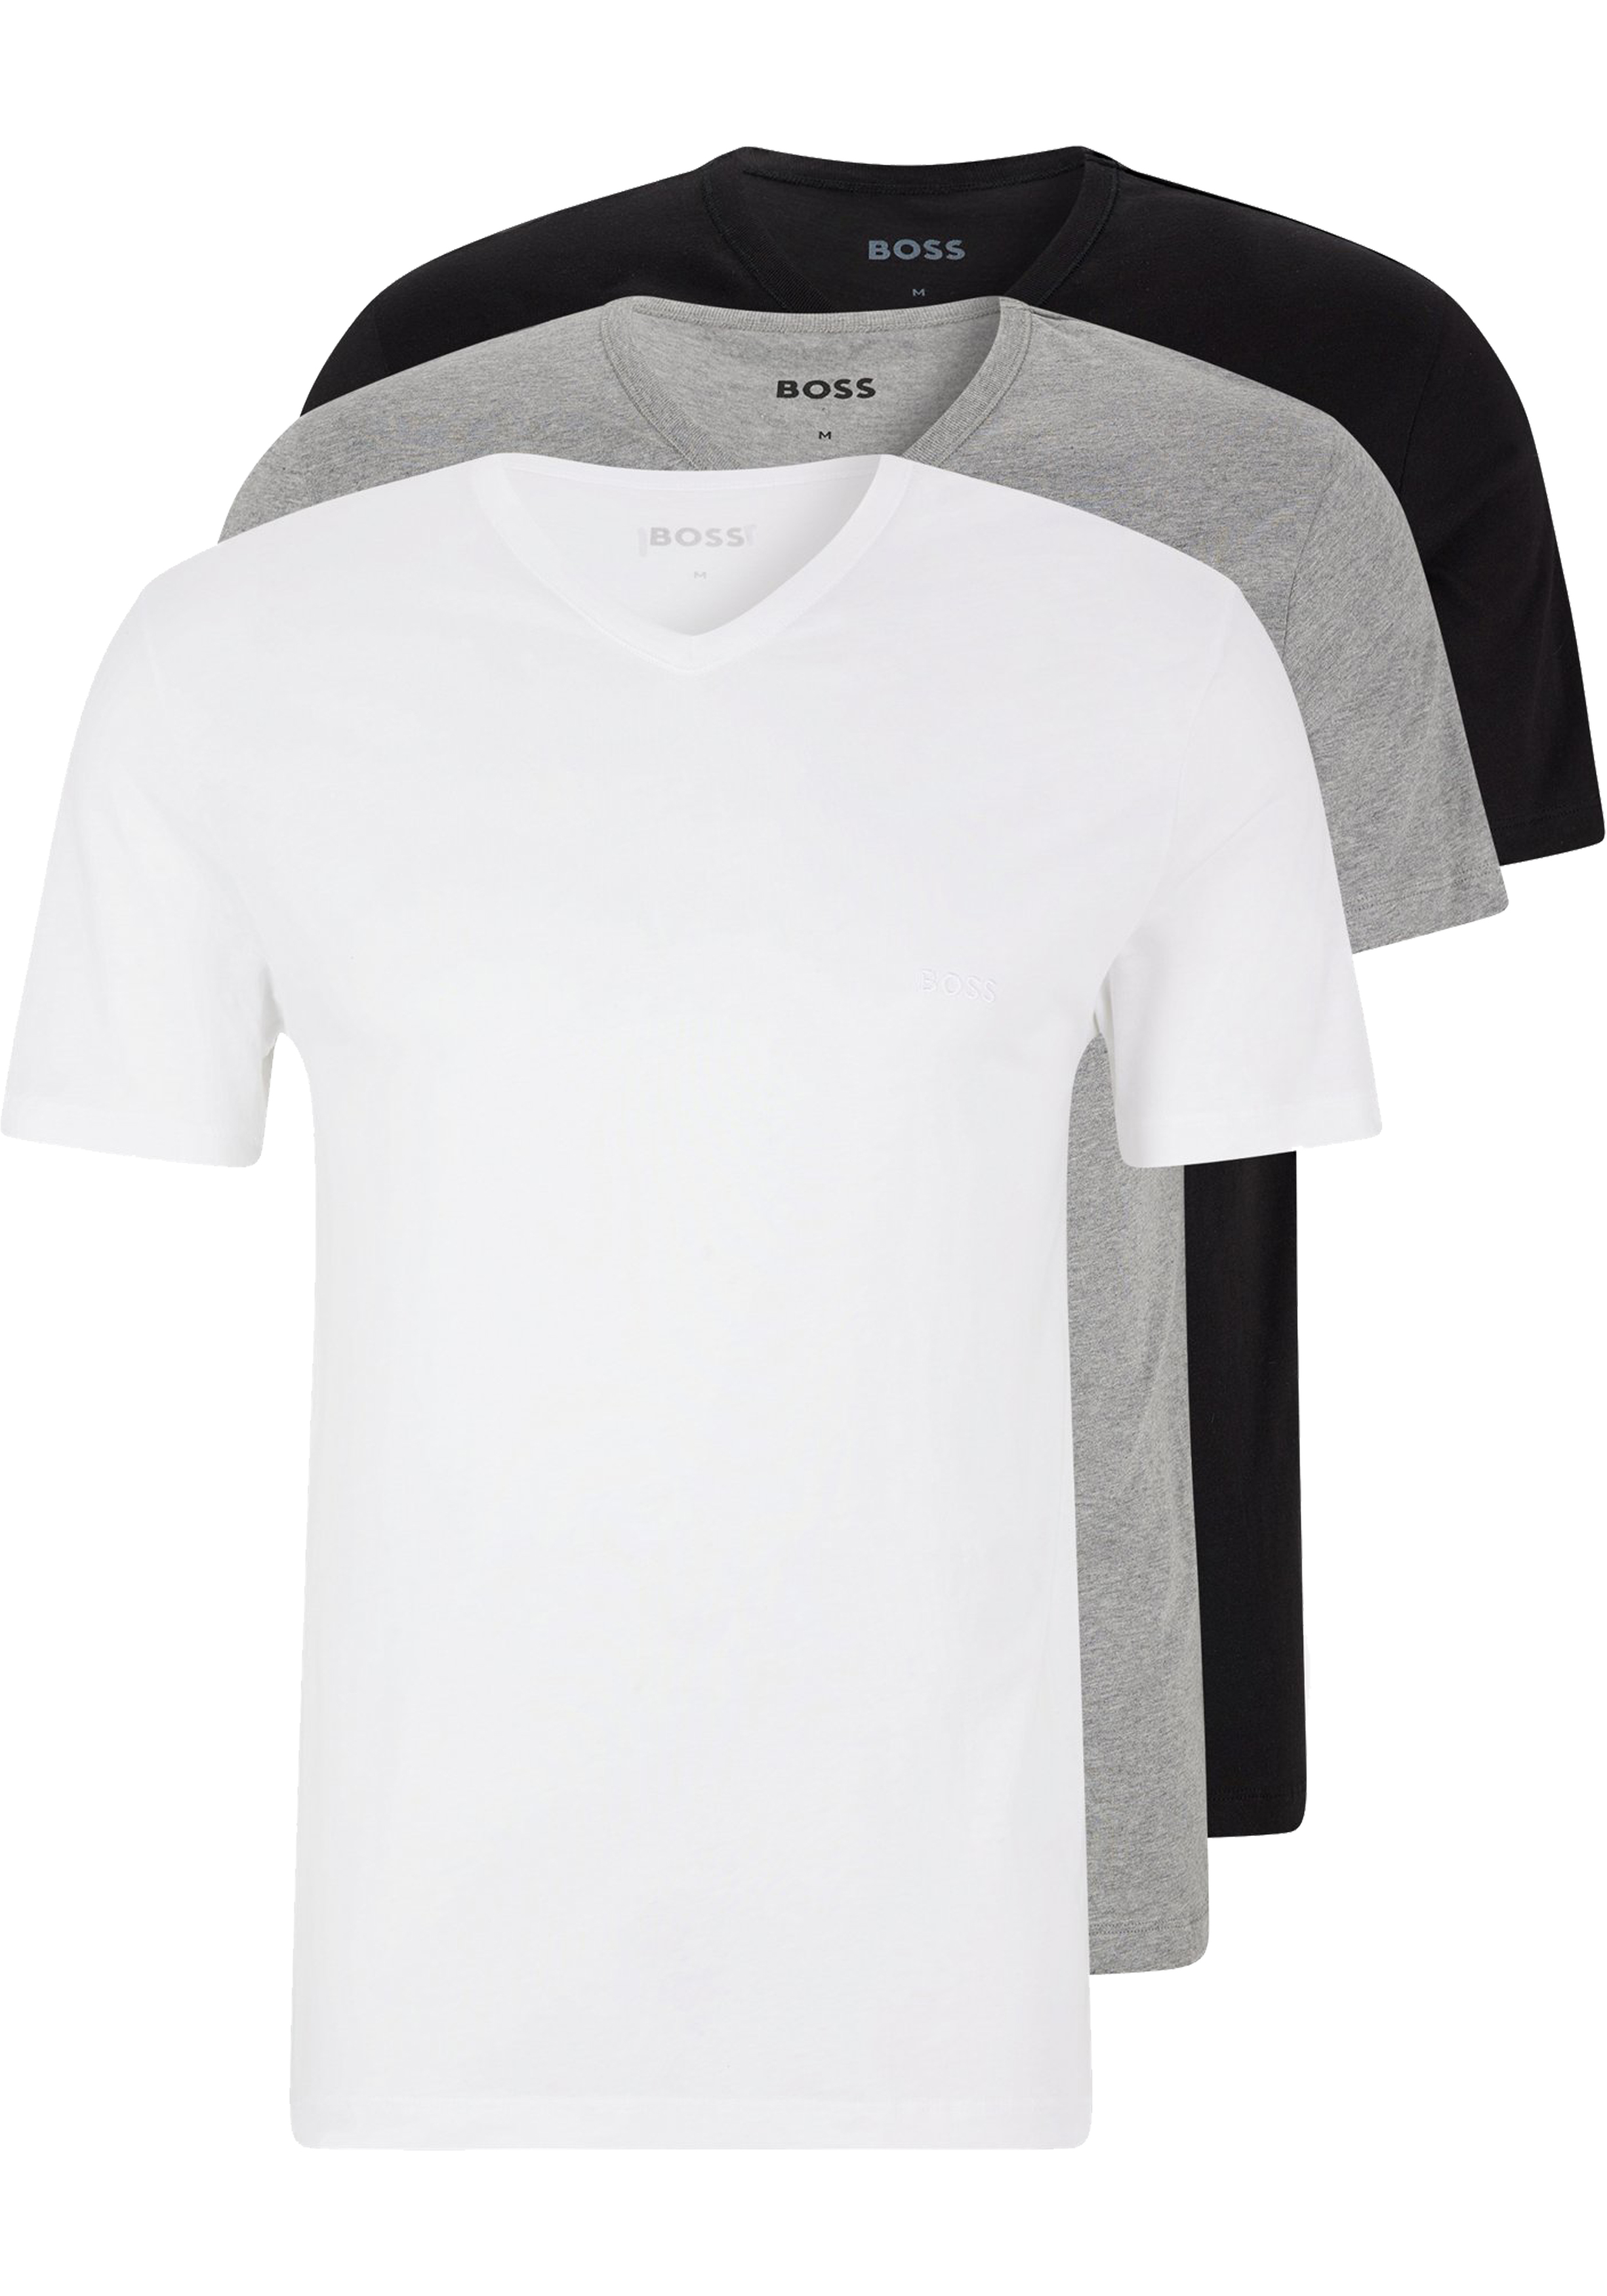 Inzichtelijk Regenachtig typist HUGO BOSS Classic T-shirts regular fit (3-pack), heren T-shirts V-hals,...  - Shop de nieuwste voorjaarsmode